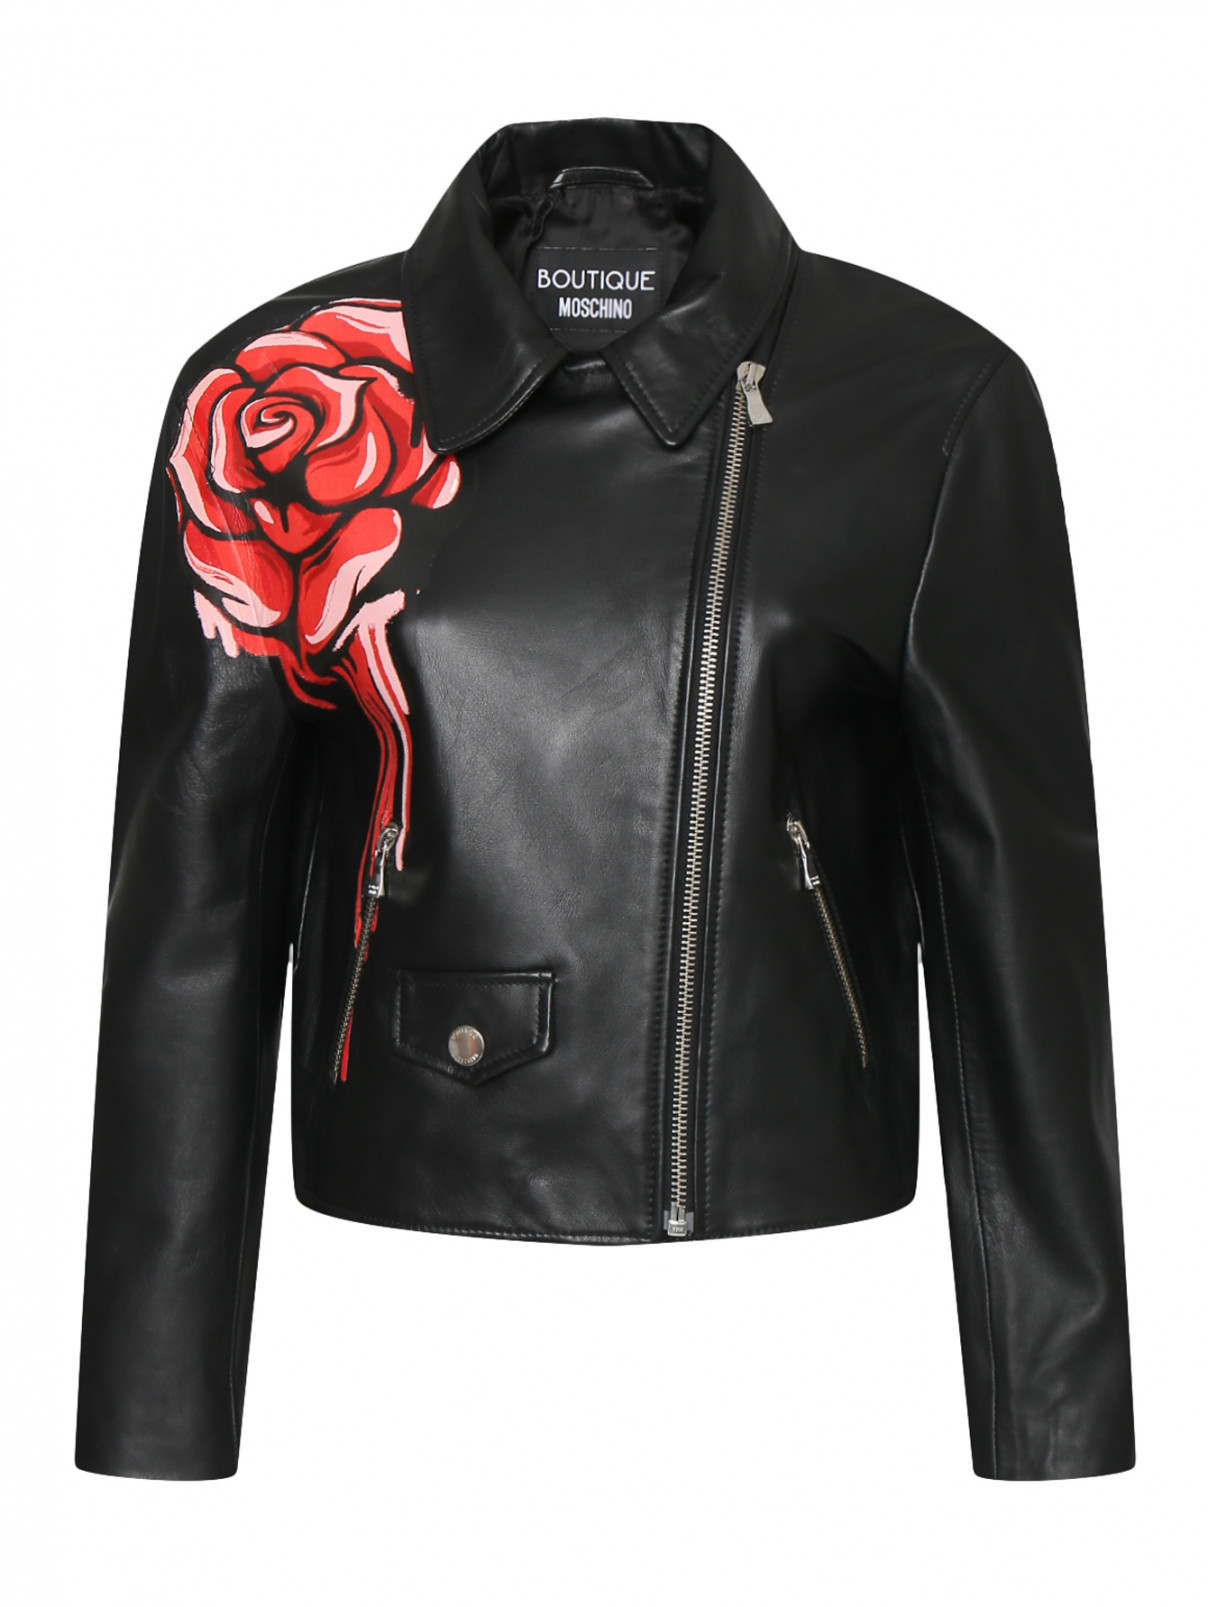 Кожаная куртка на молнии с цветочным принтом Moschino Boutique  –  Общий вид  – Цвет:  Черный